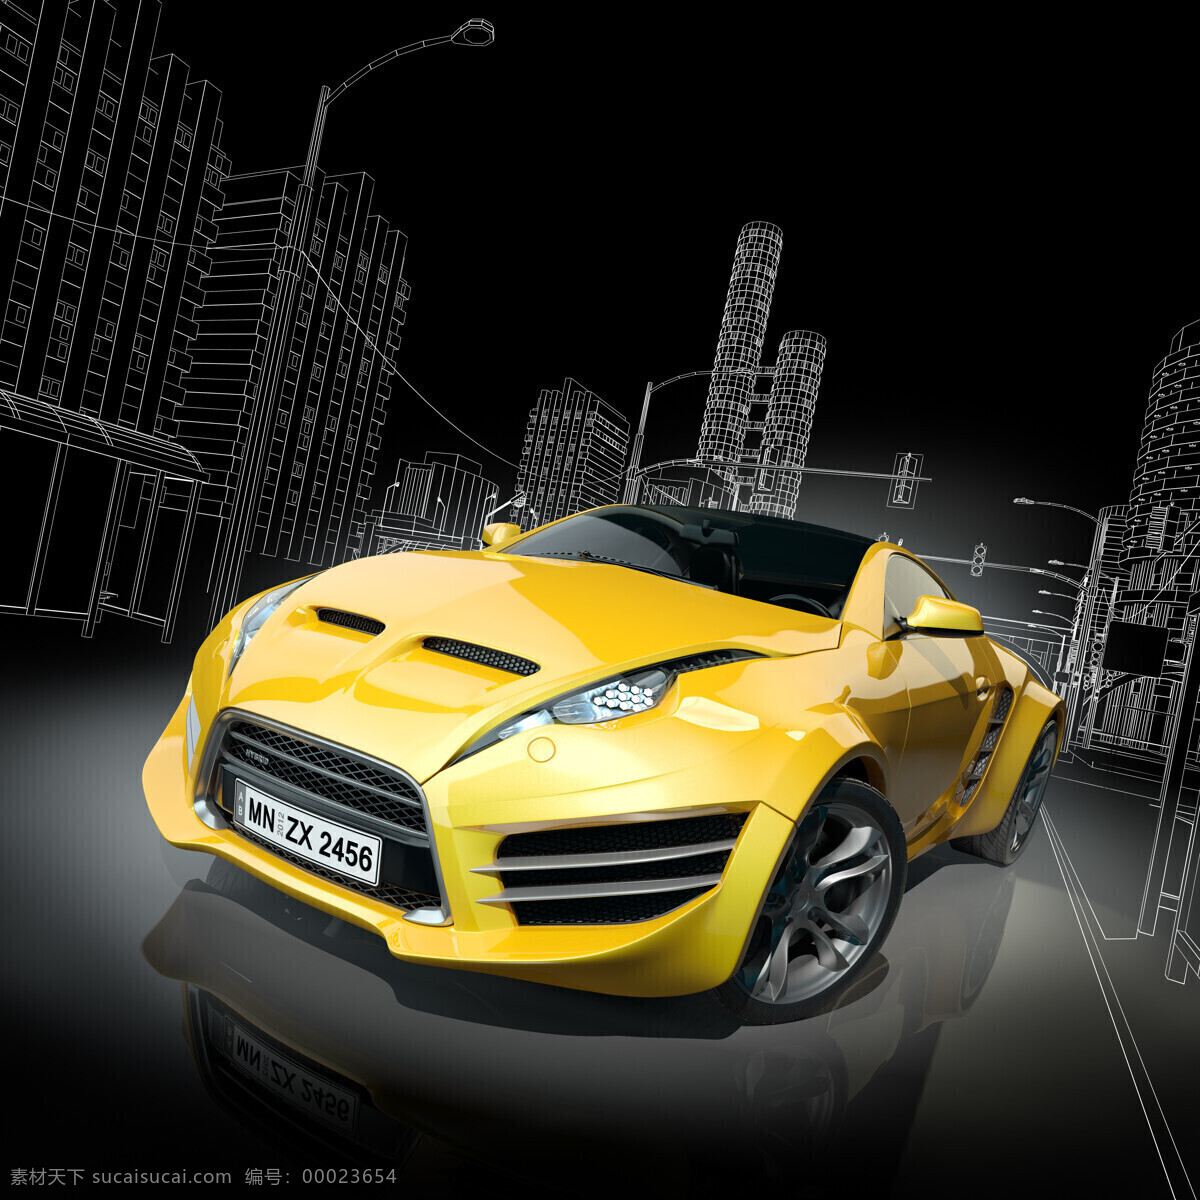 汽车模型 设计素材 3d 汽车 汽车设计 图纸 跑车 交通工具 设计图纸 汽车图片 现代科技